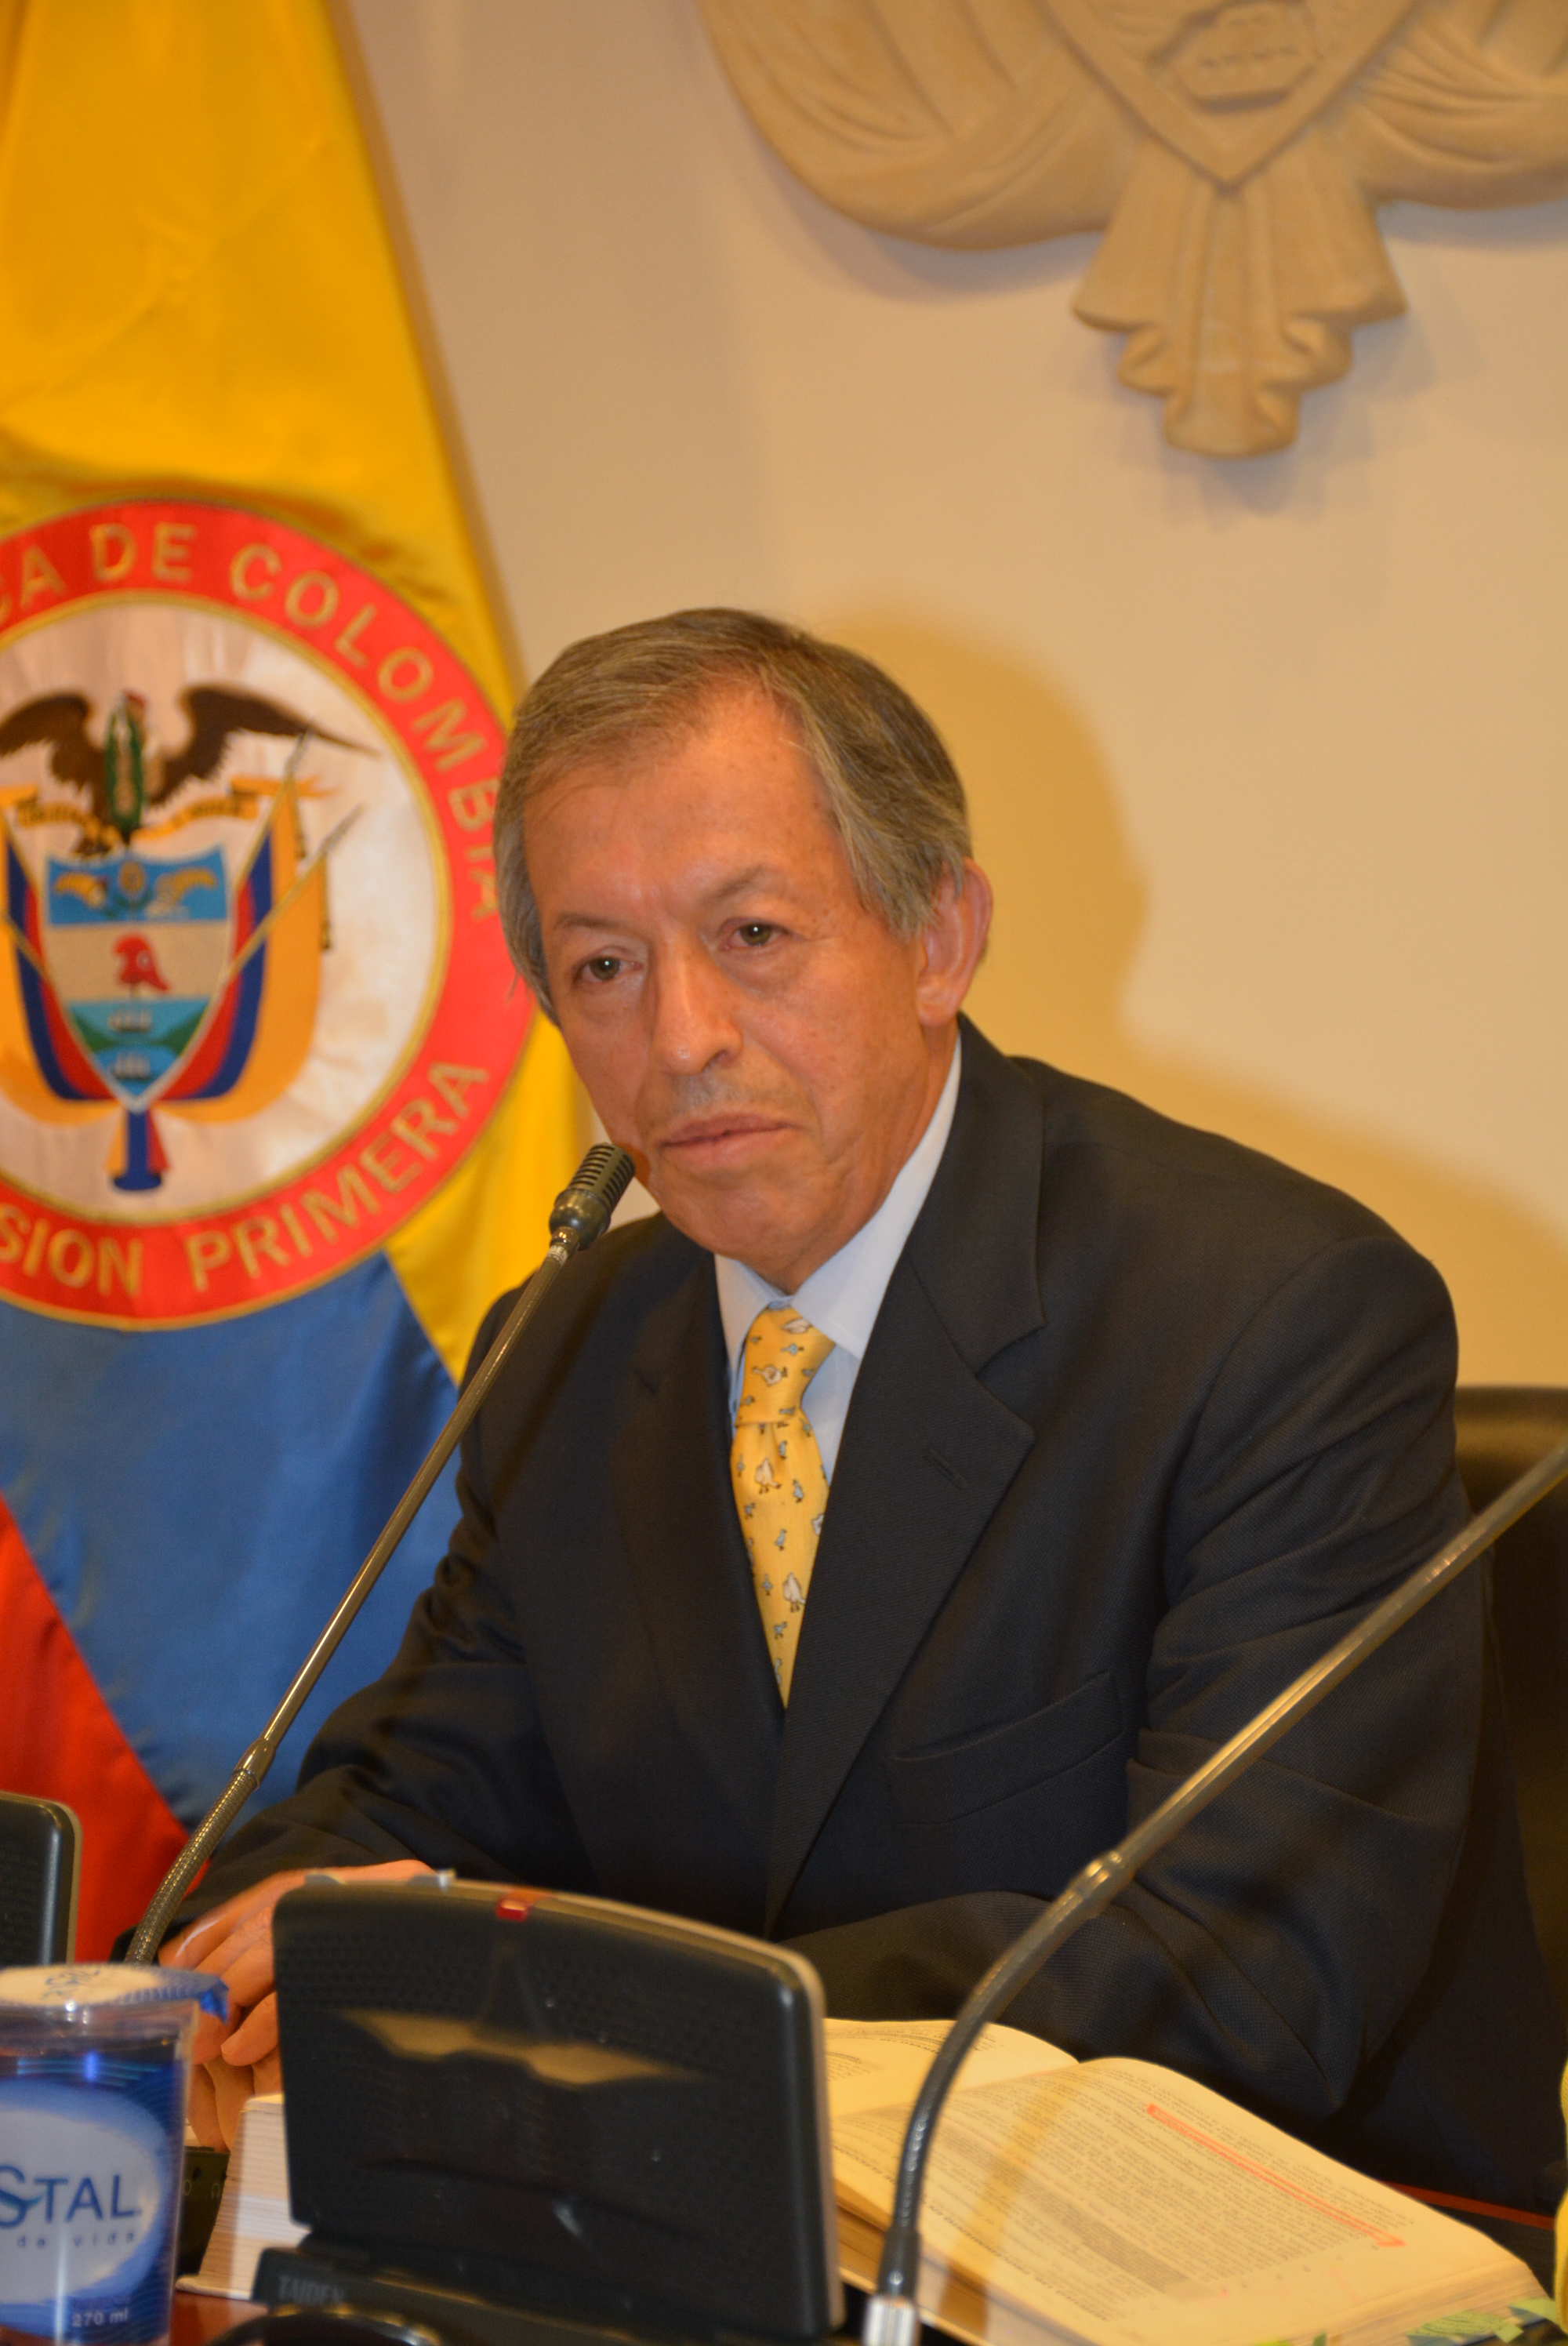 Copresidente de la Comisión de Paz del Congreso rechaza ataque aleve contra Policía en el departamento del Cauca